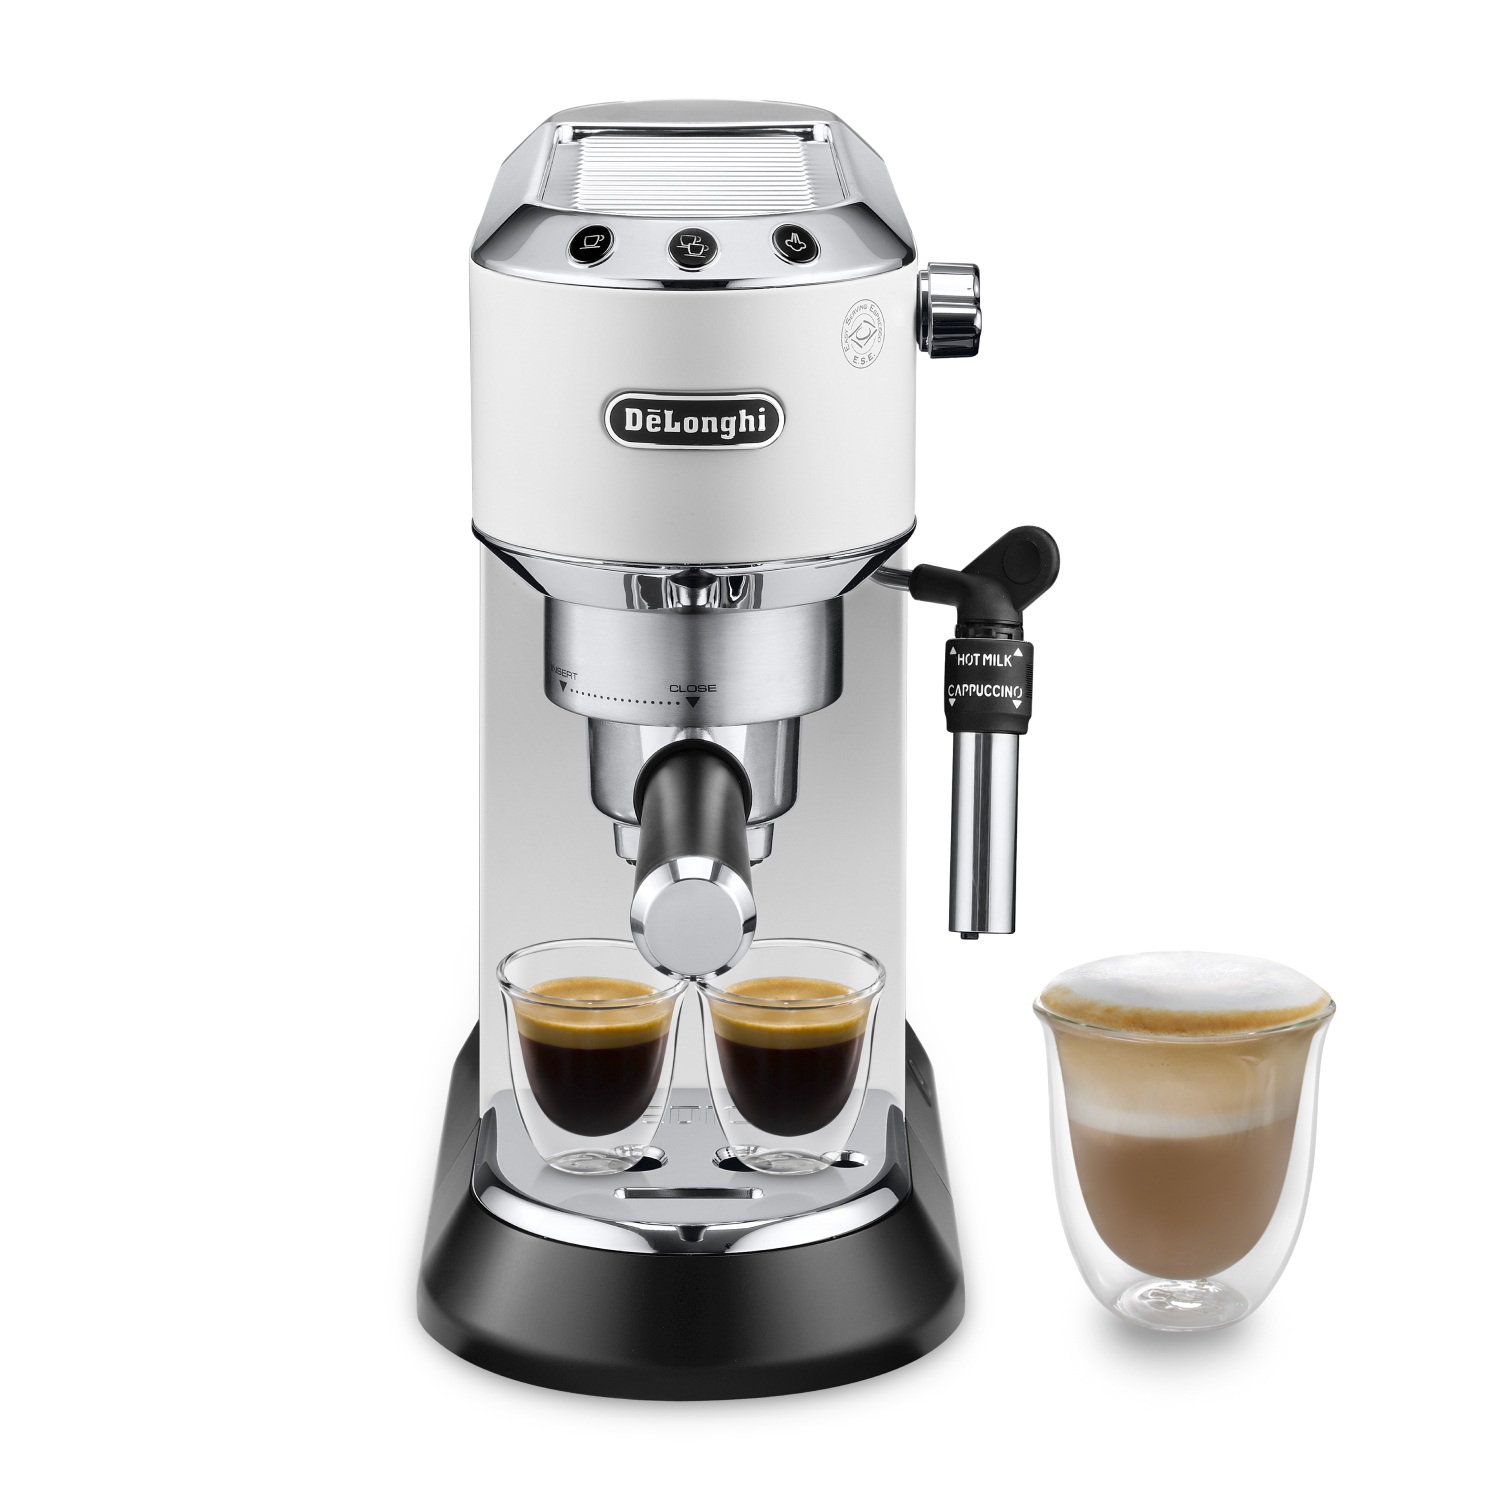 Delonghi - De'Longhi - Dedica Cafetera Espresso Italiana. Máquina de café gourmet en casa. 15 bares de presión, capacidad 1,1L, 1300W. Modelo EC685